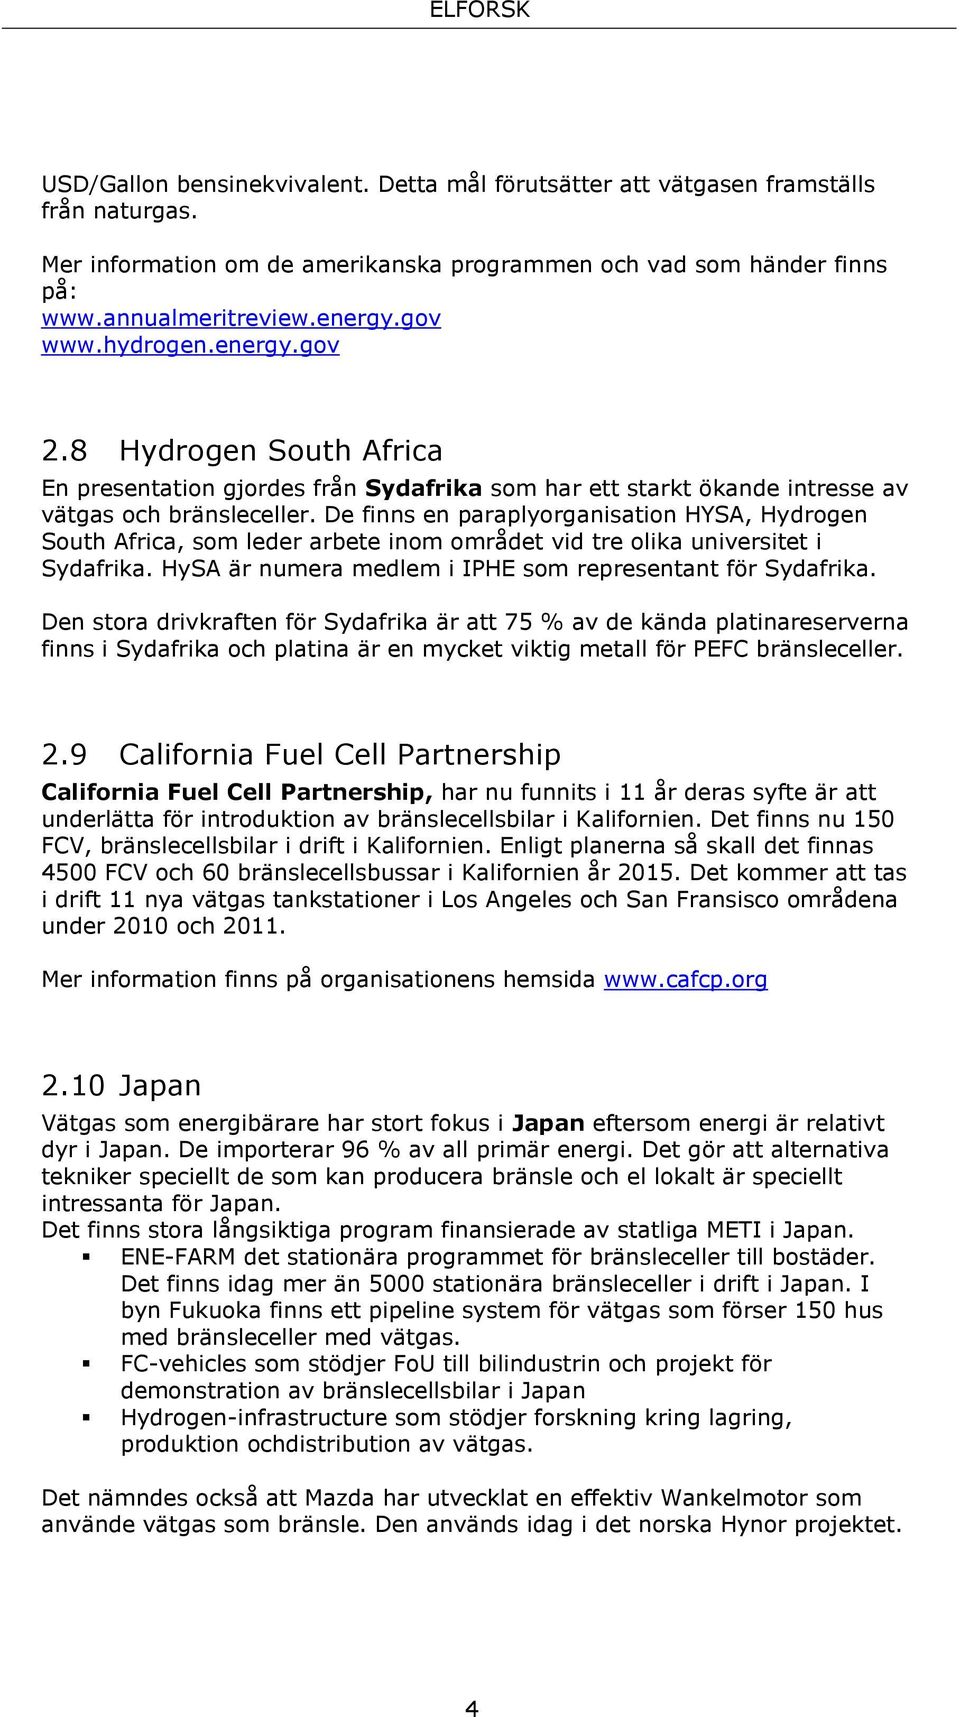 De finns en paraplyorganisation HYSA, Hydrogen South Africa, som leder arbete inom området vid tre olika universitet i Sydafrika. HySA är numera medlem i IPHE som representant för Sydafrika.